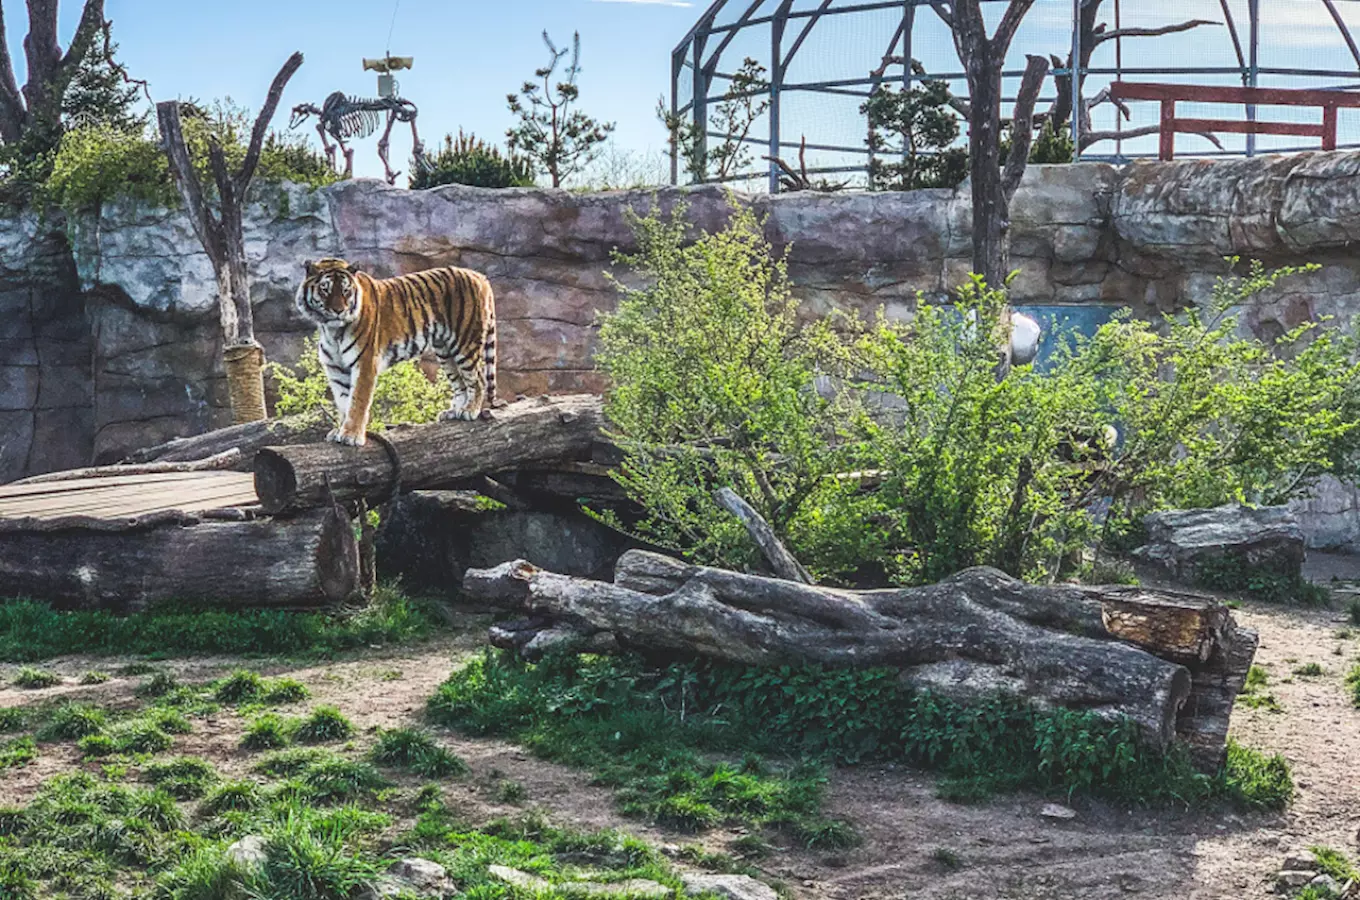 Jihočeská zoologická zahrada Hluboká nad Vltavou – adoptujte si zvíře